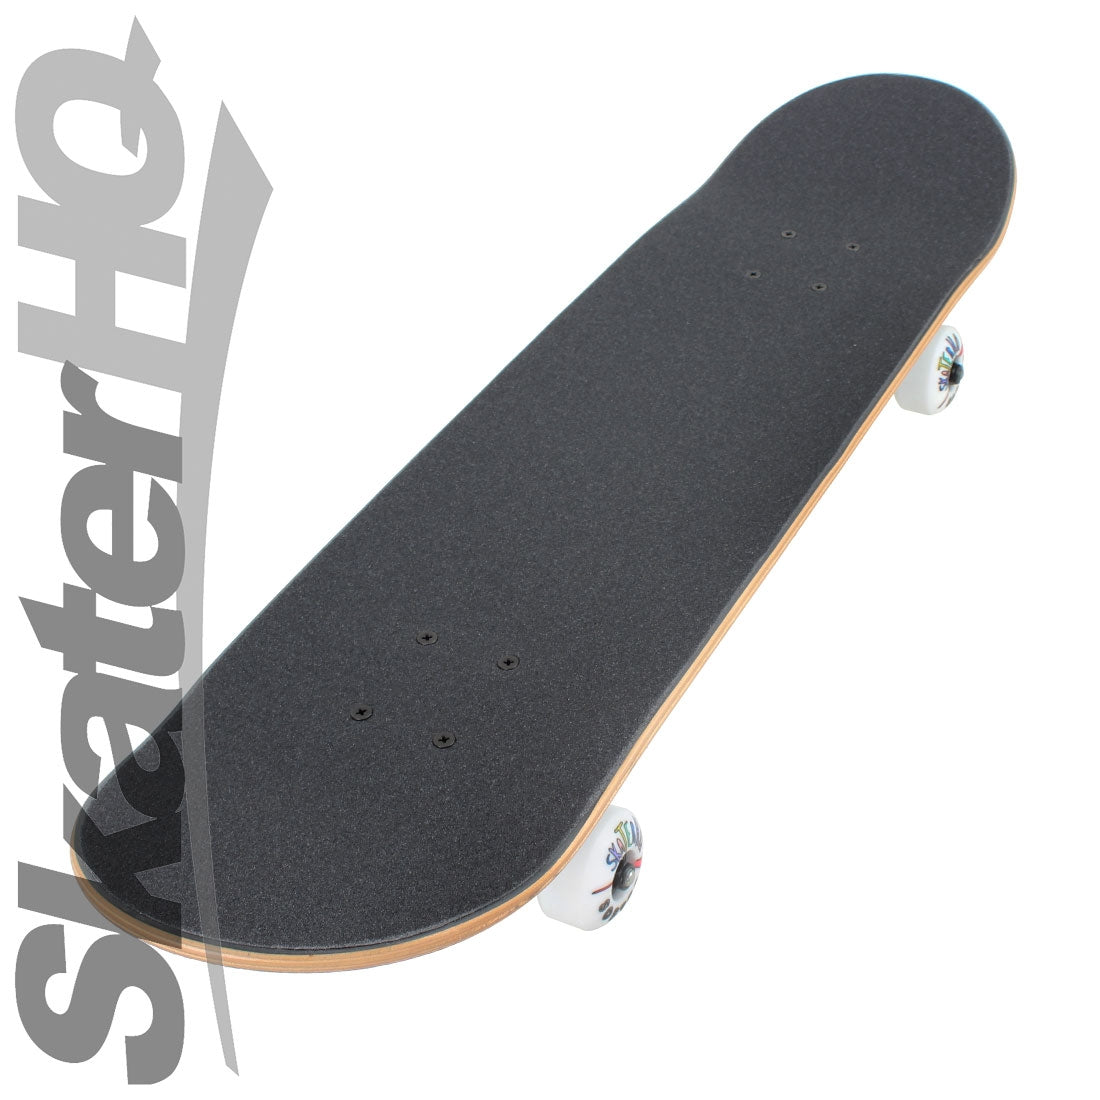 Skater HQ Ugly Stick 7.9 S Complete Skateboard Completes Modern Street